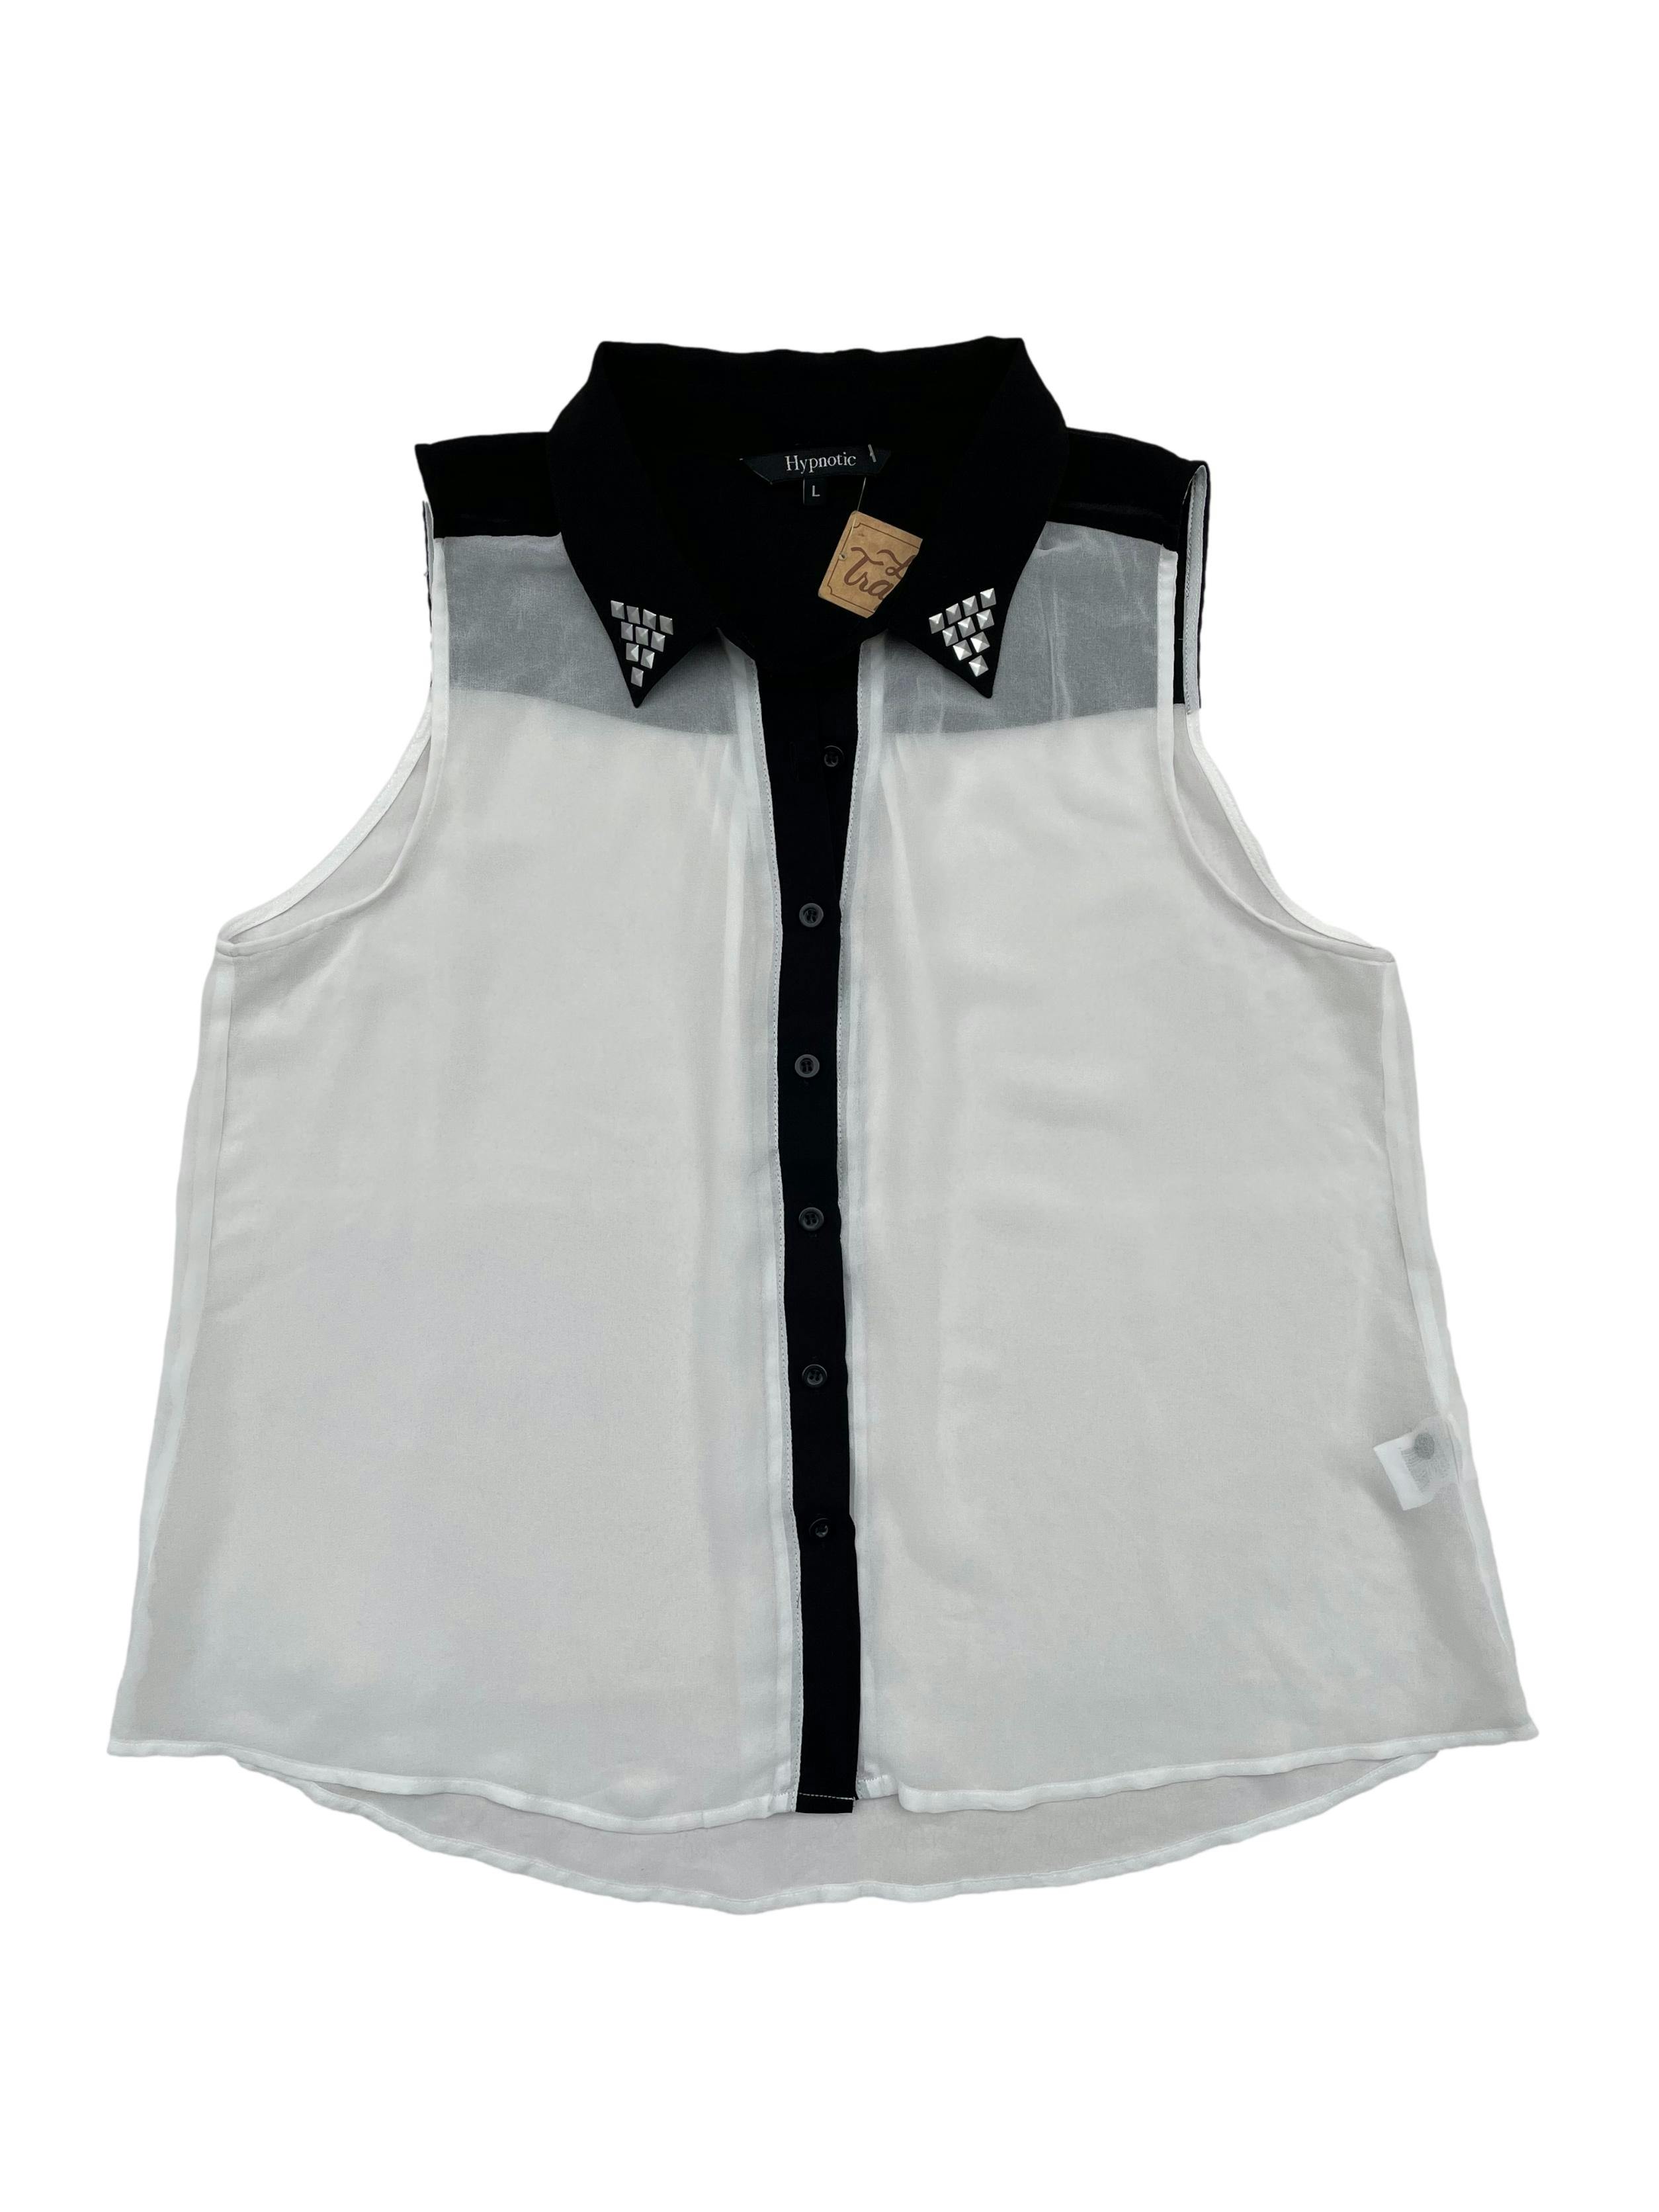 Blusa de gasa blanca con negro en cuello y hombros, detalles de tachas en solapa de cuello Busto 100cm. Largo 62cm